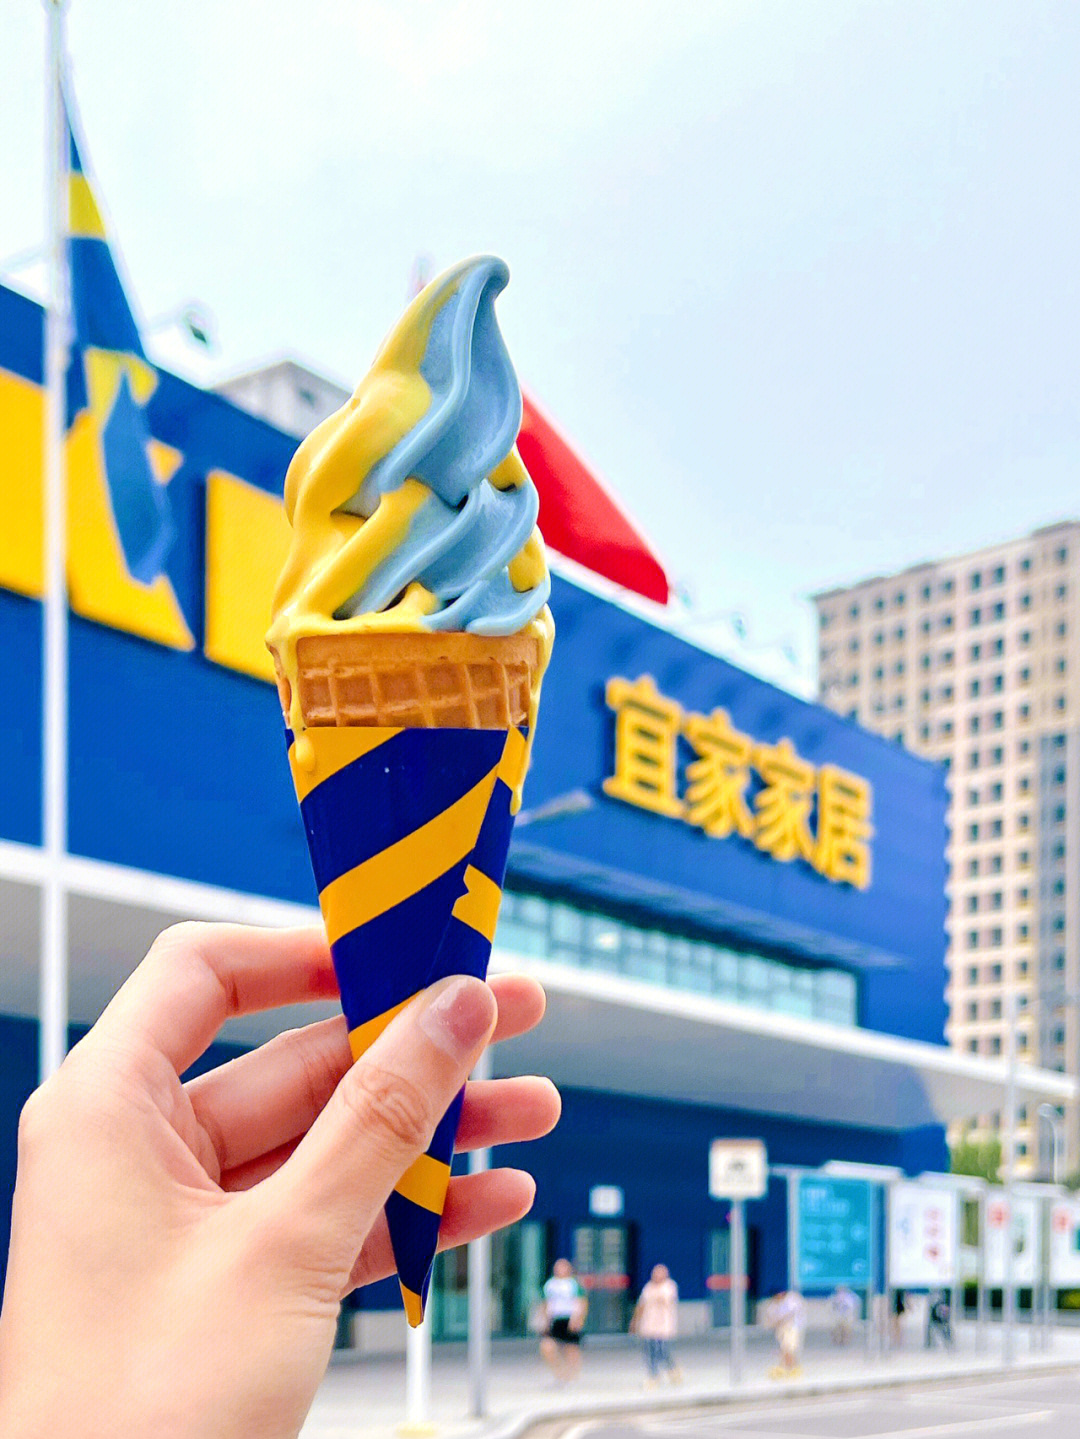 在雪糕刺客横行的年代,宜家竟然出了一款只要3r的黄蓝撞色冰淇淋